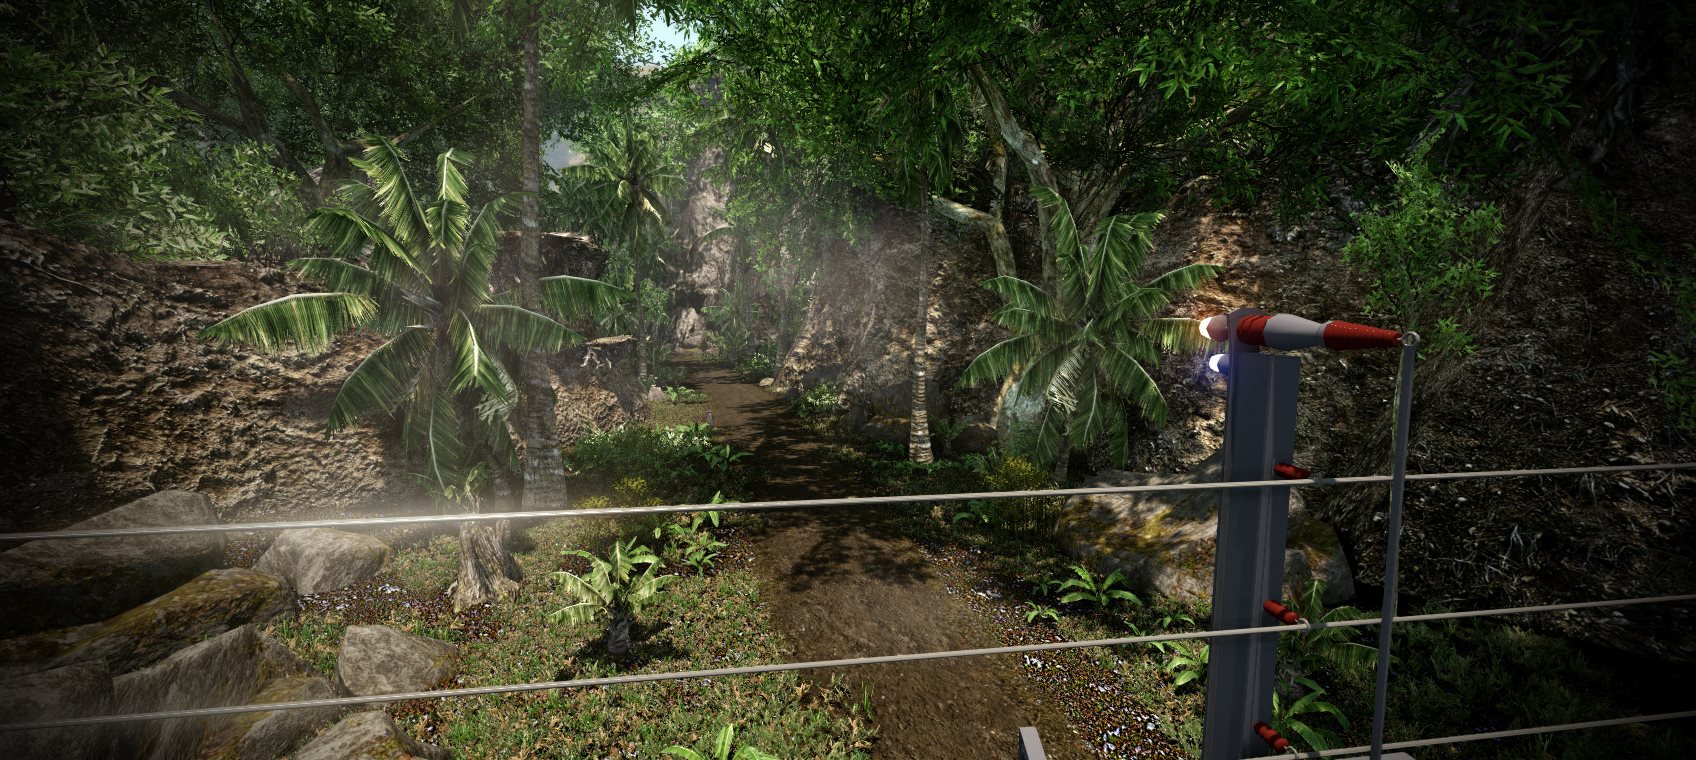 Jurassic Park: Aftermath için ekran görüntüleri yayınlandı